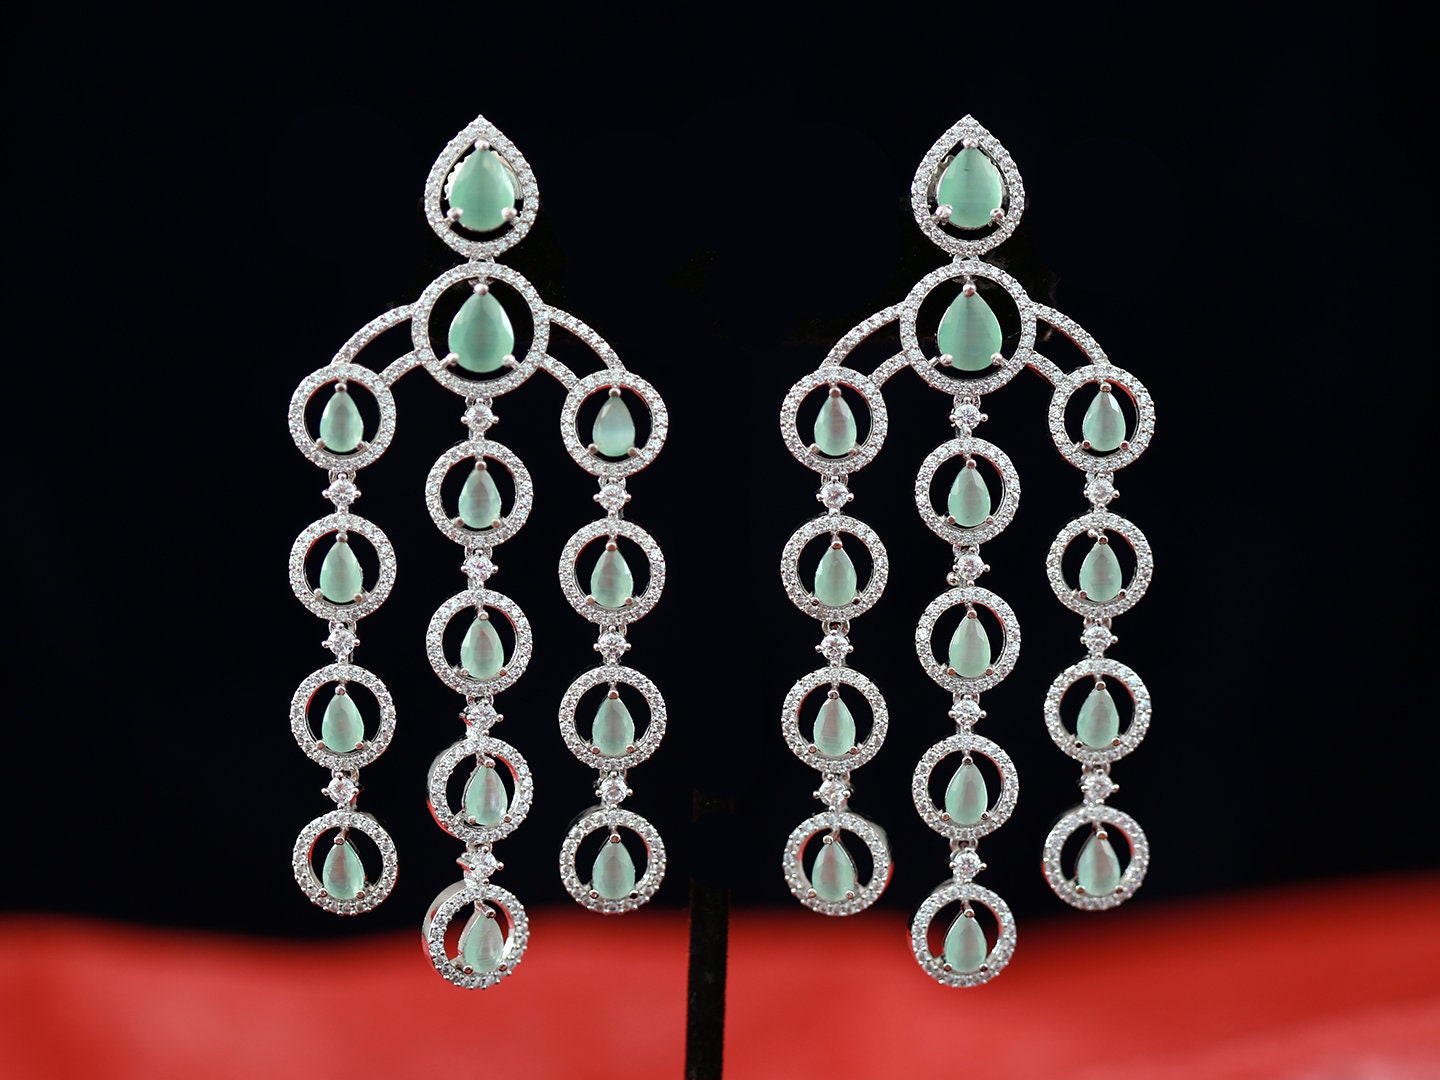 Crystal chandelier earrings for wedding | Silver teardrop dangle earrings | Cz bridal chandelier earrings | Triple strand long drop earrings